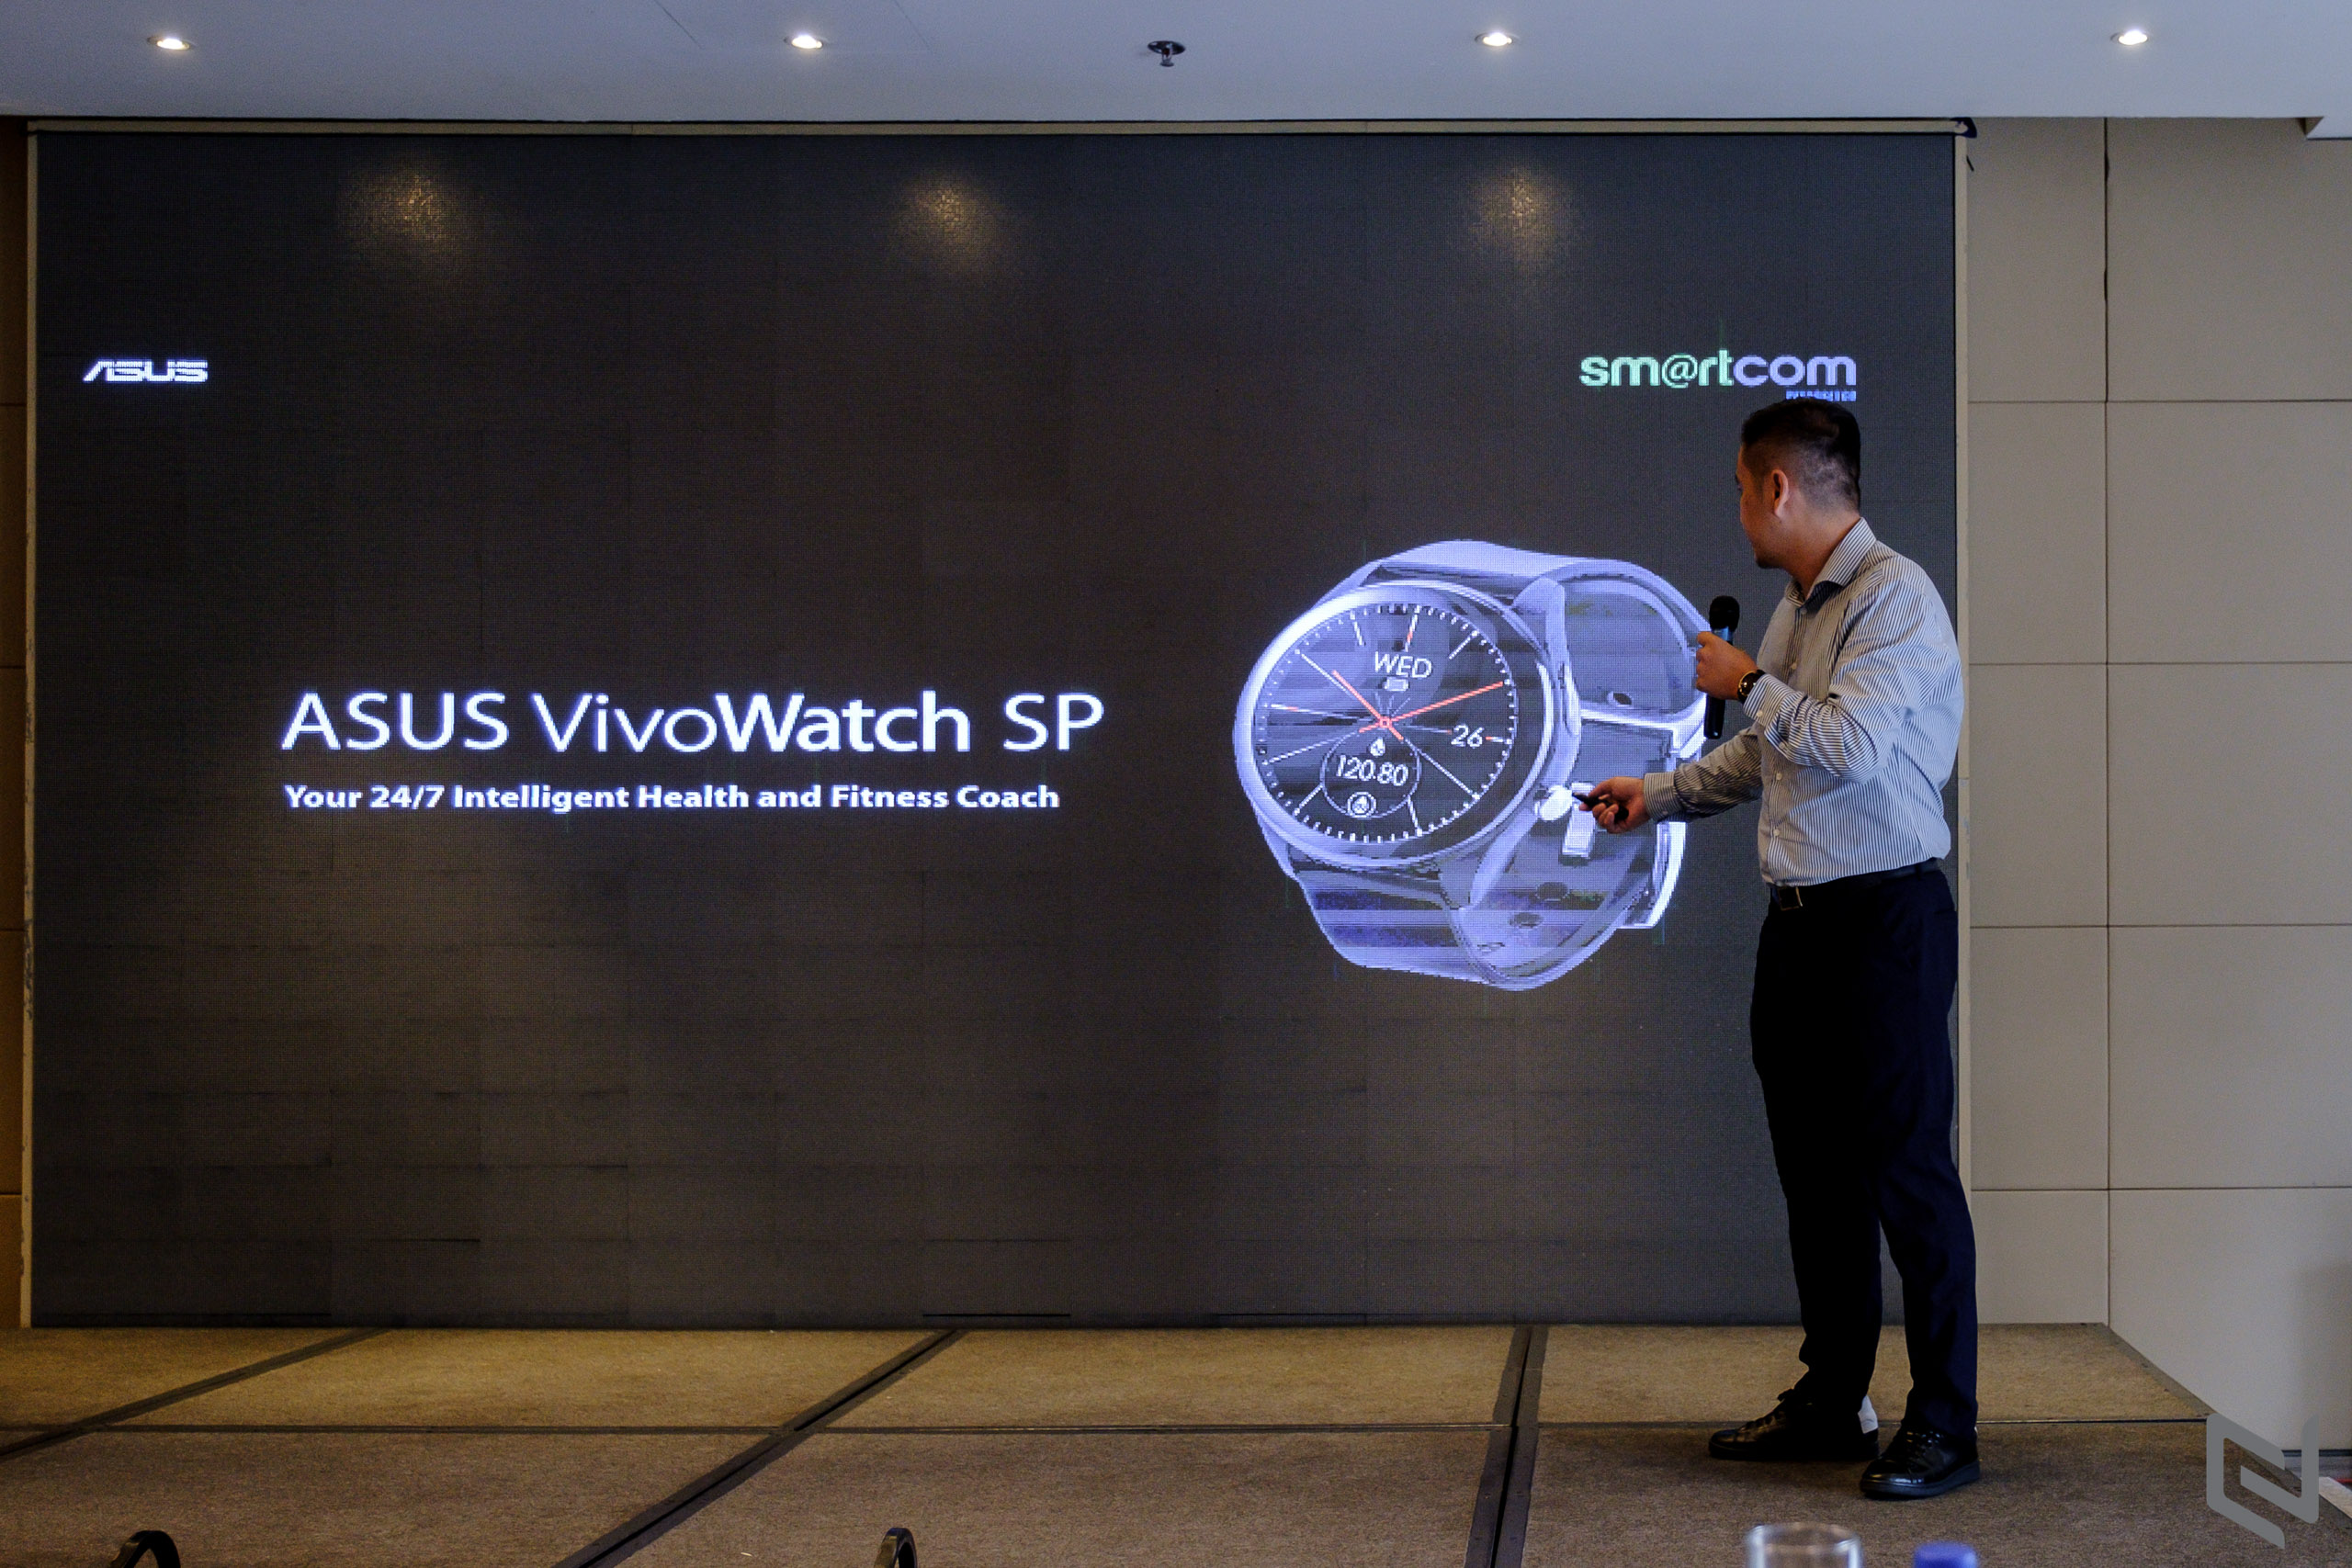 ASUS ra mắt đồng hồ thông minh VivoWatch SP và giới thiệu nhà phân phối Smartcom